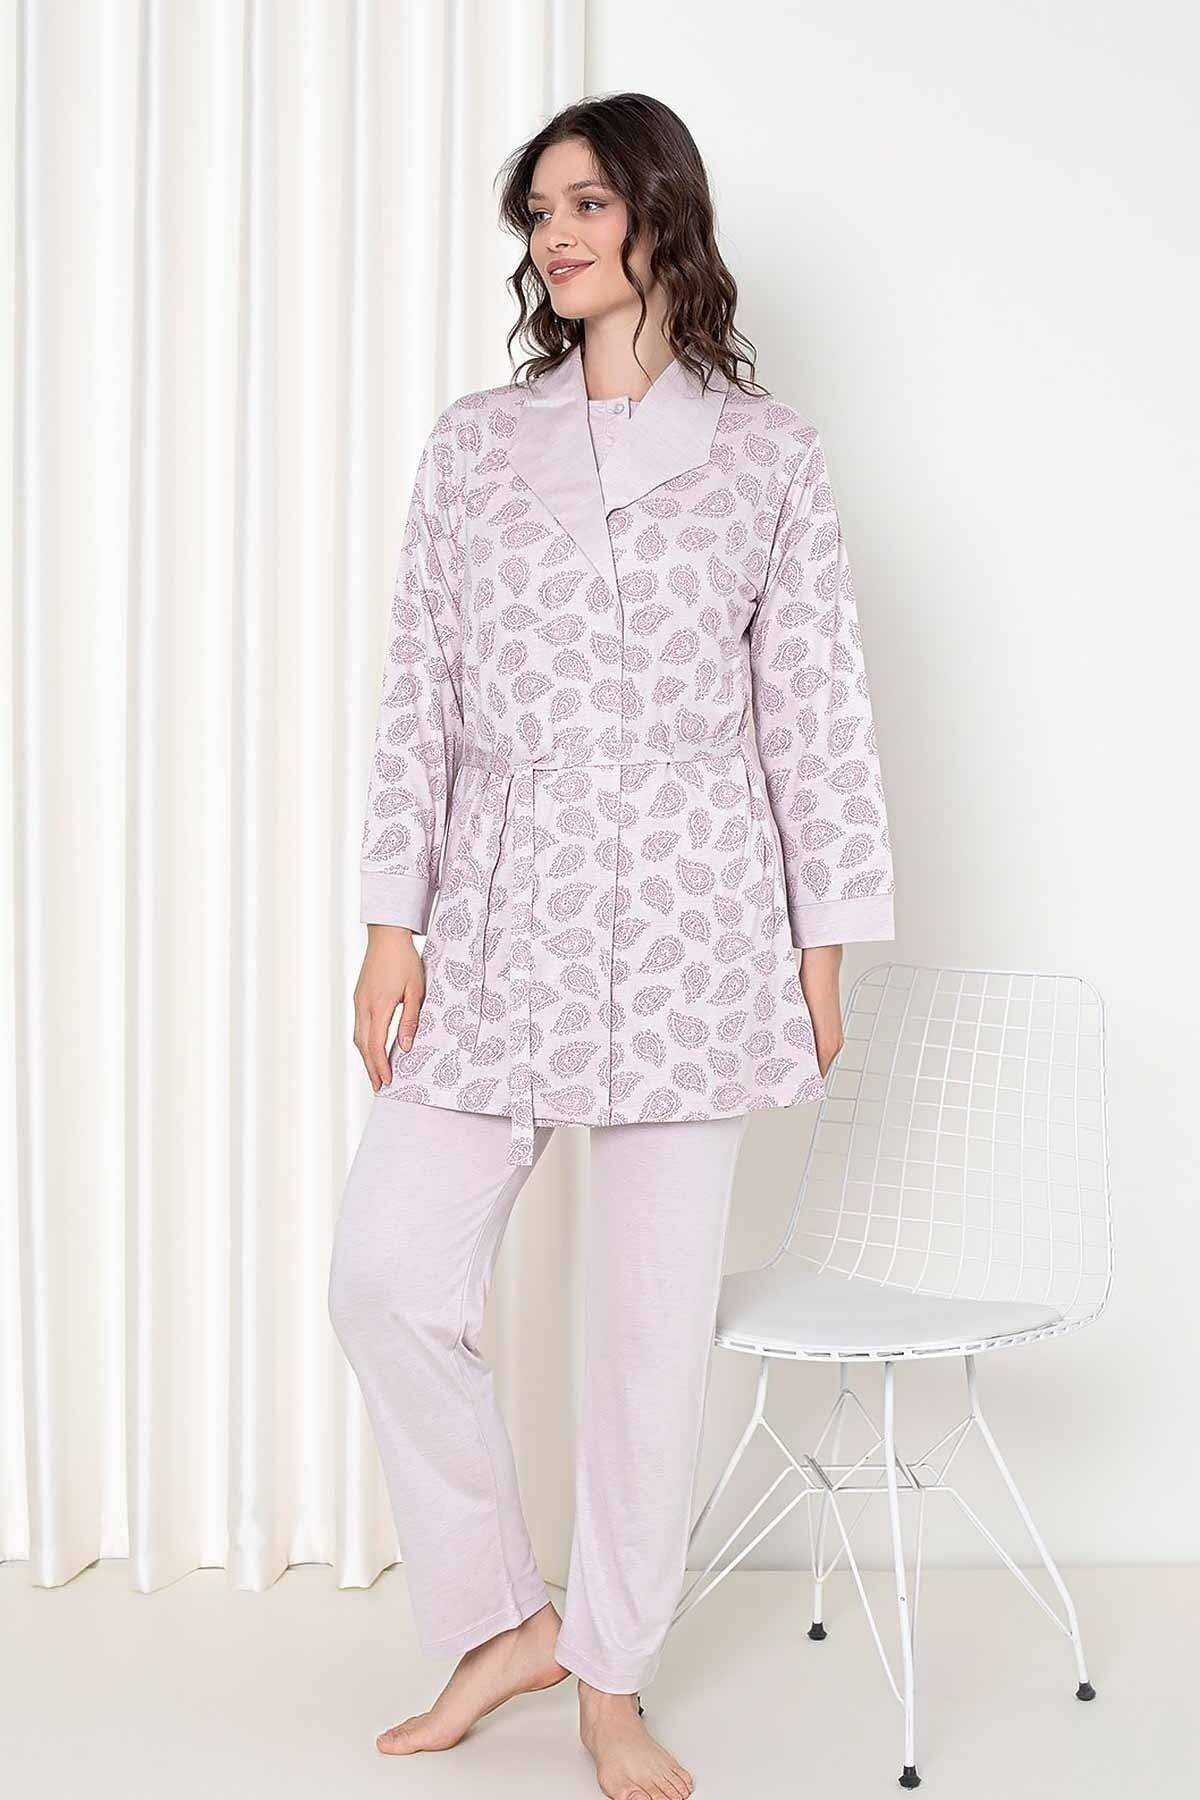 ALİMER Gülkurusu Sabahlıklı 3 lü Kutulu Kadın Pijama Takımı 2648